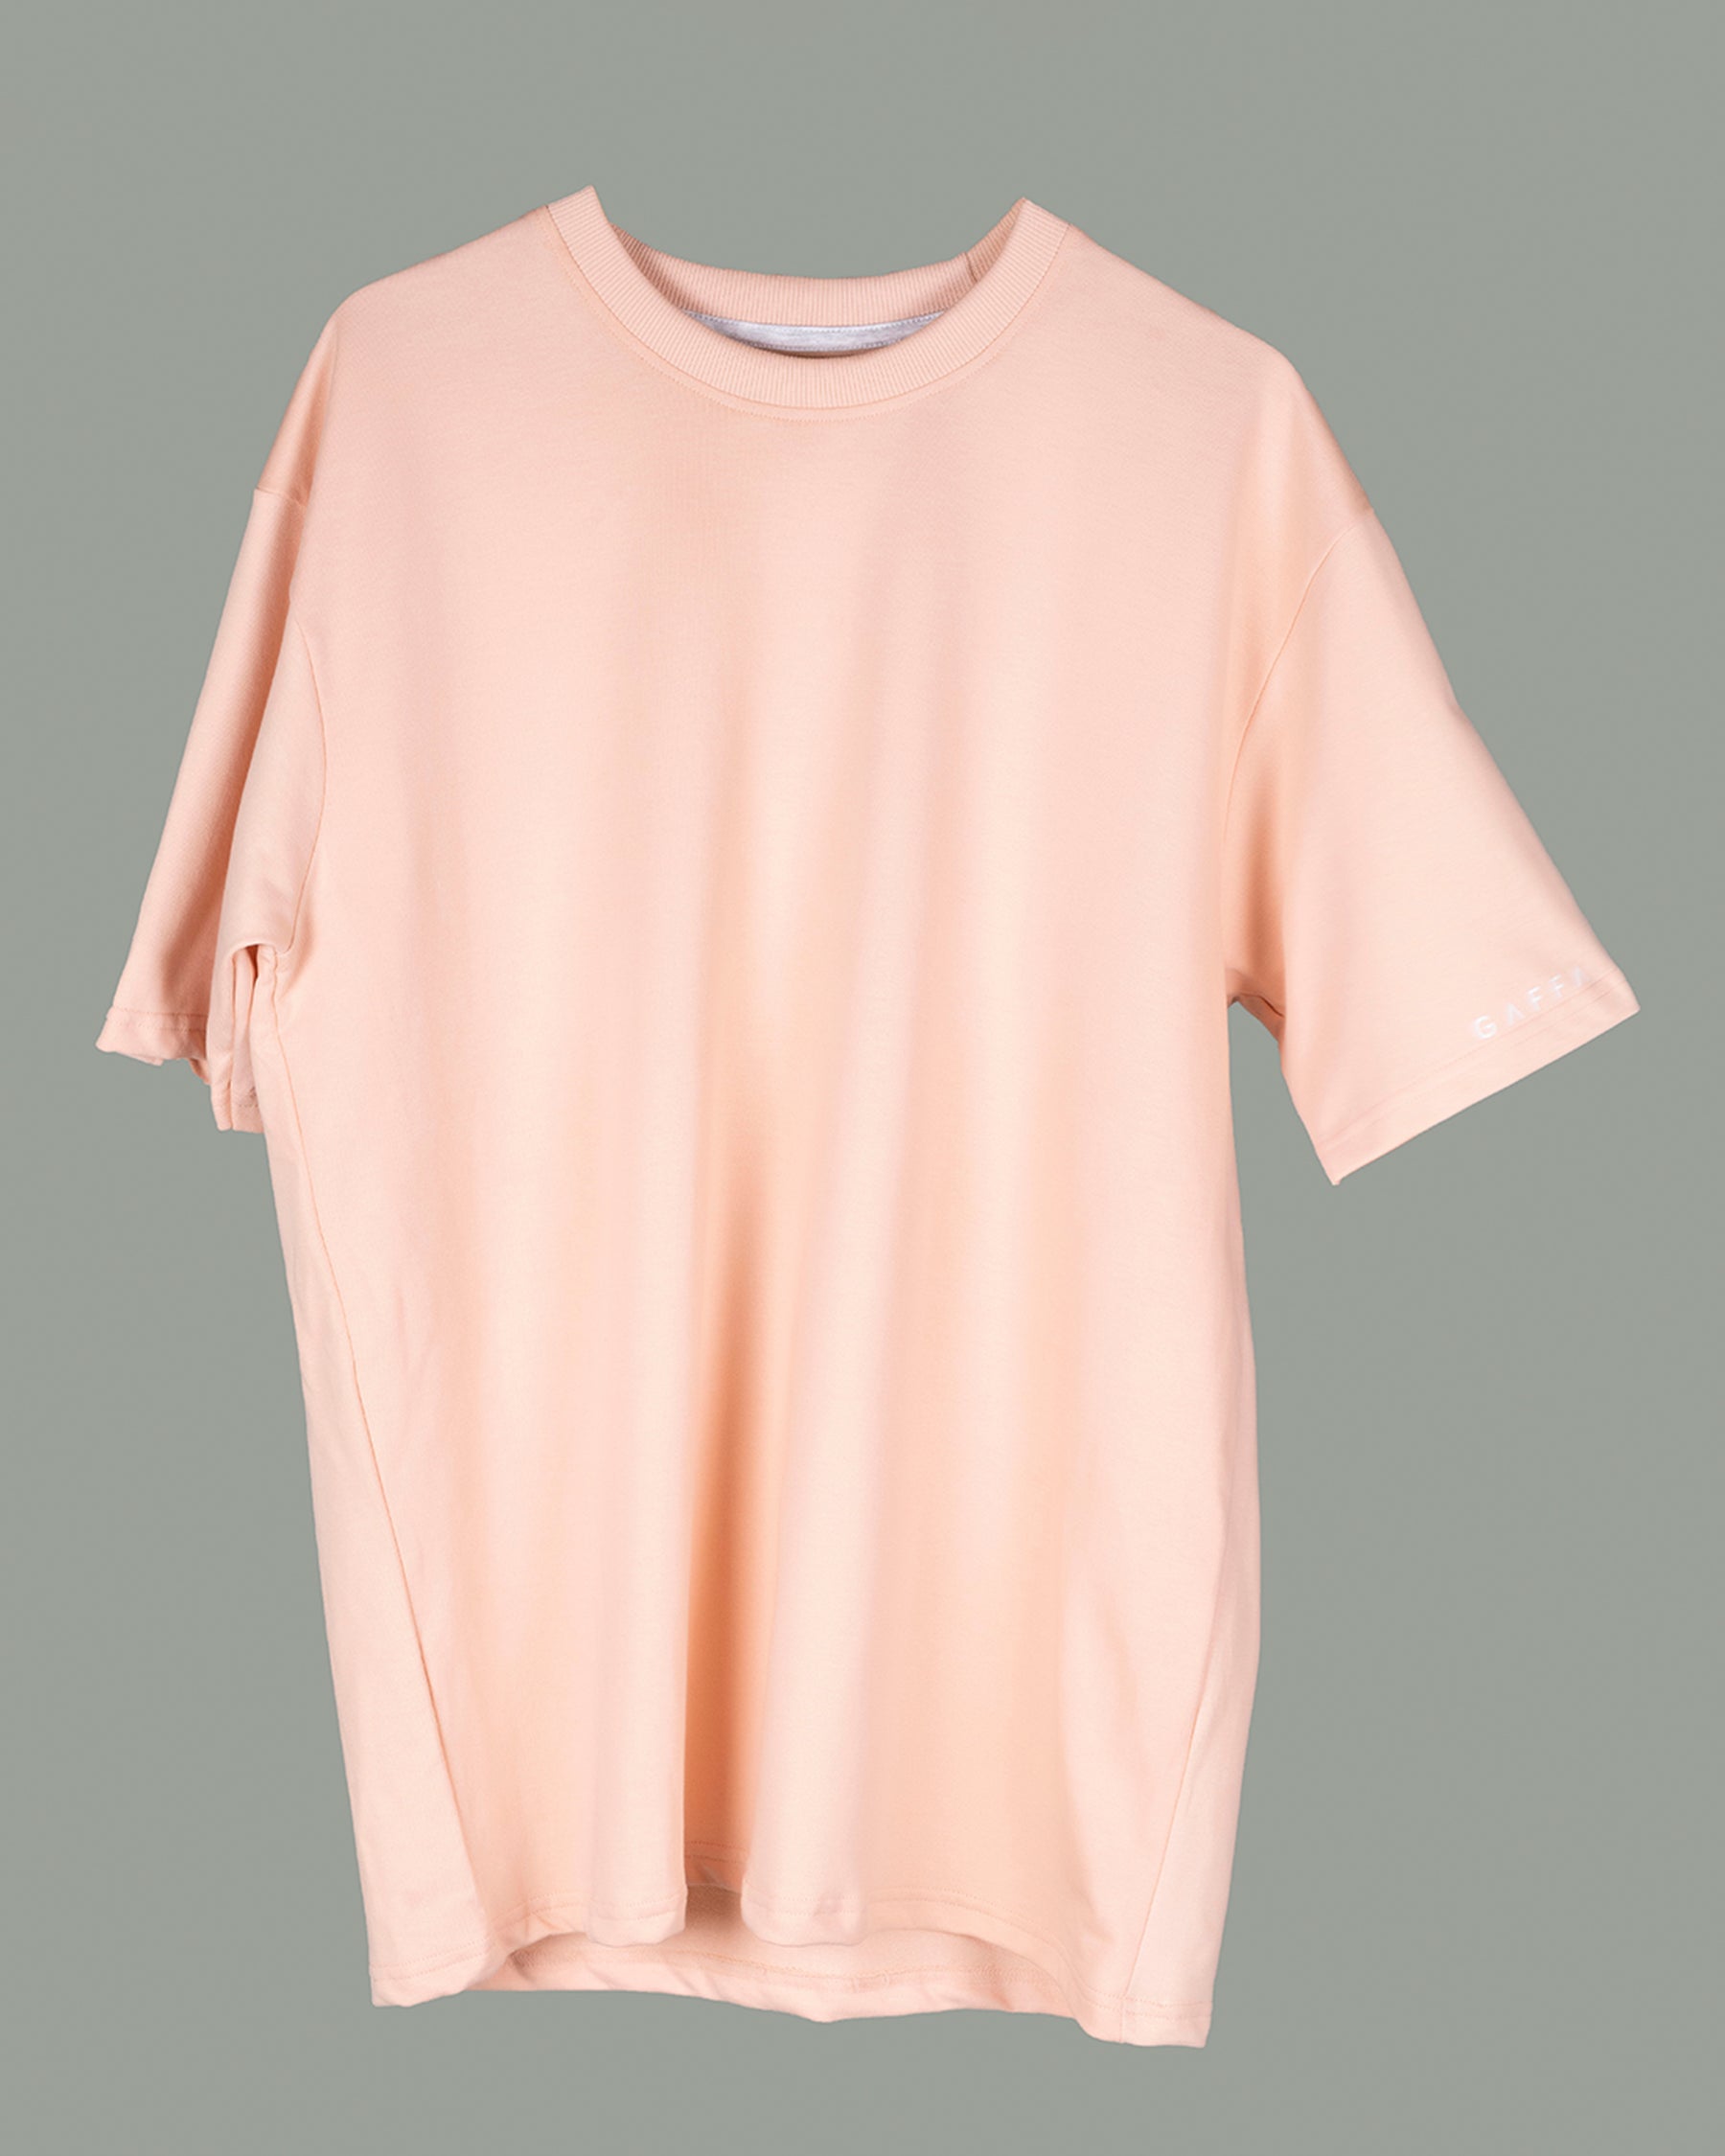 Pink Color T-shirt For Men